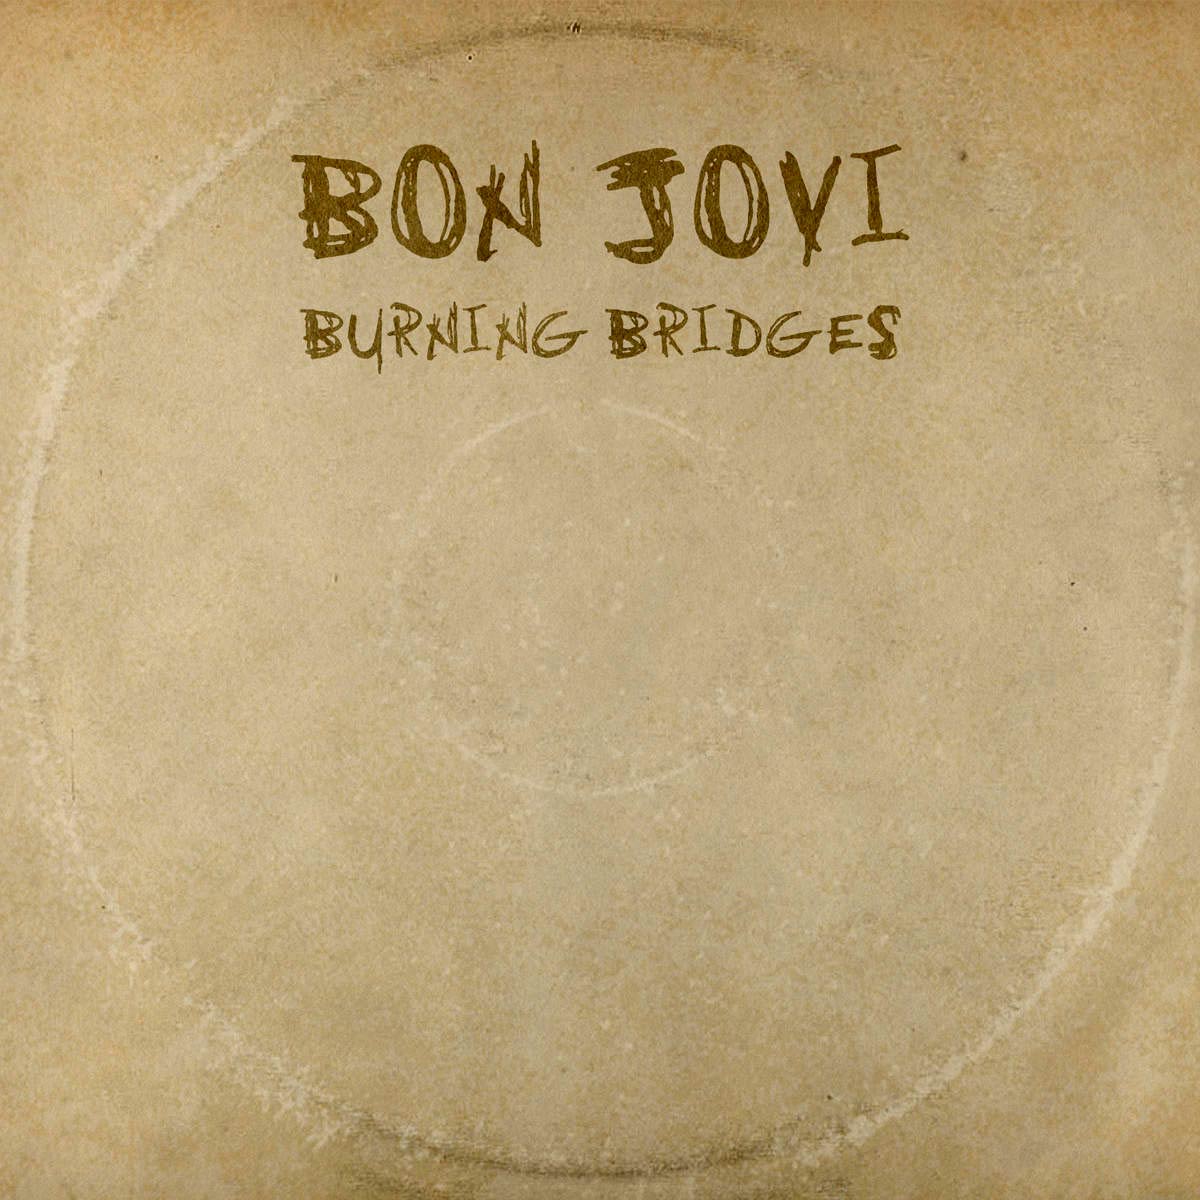 Bon Jovi: Burning bridges, la portada del disco